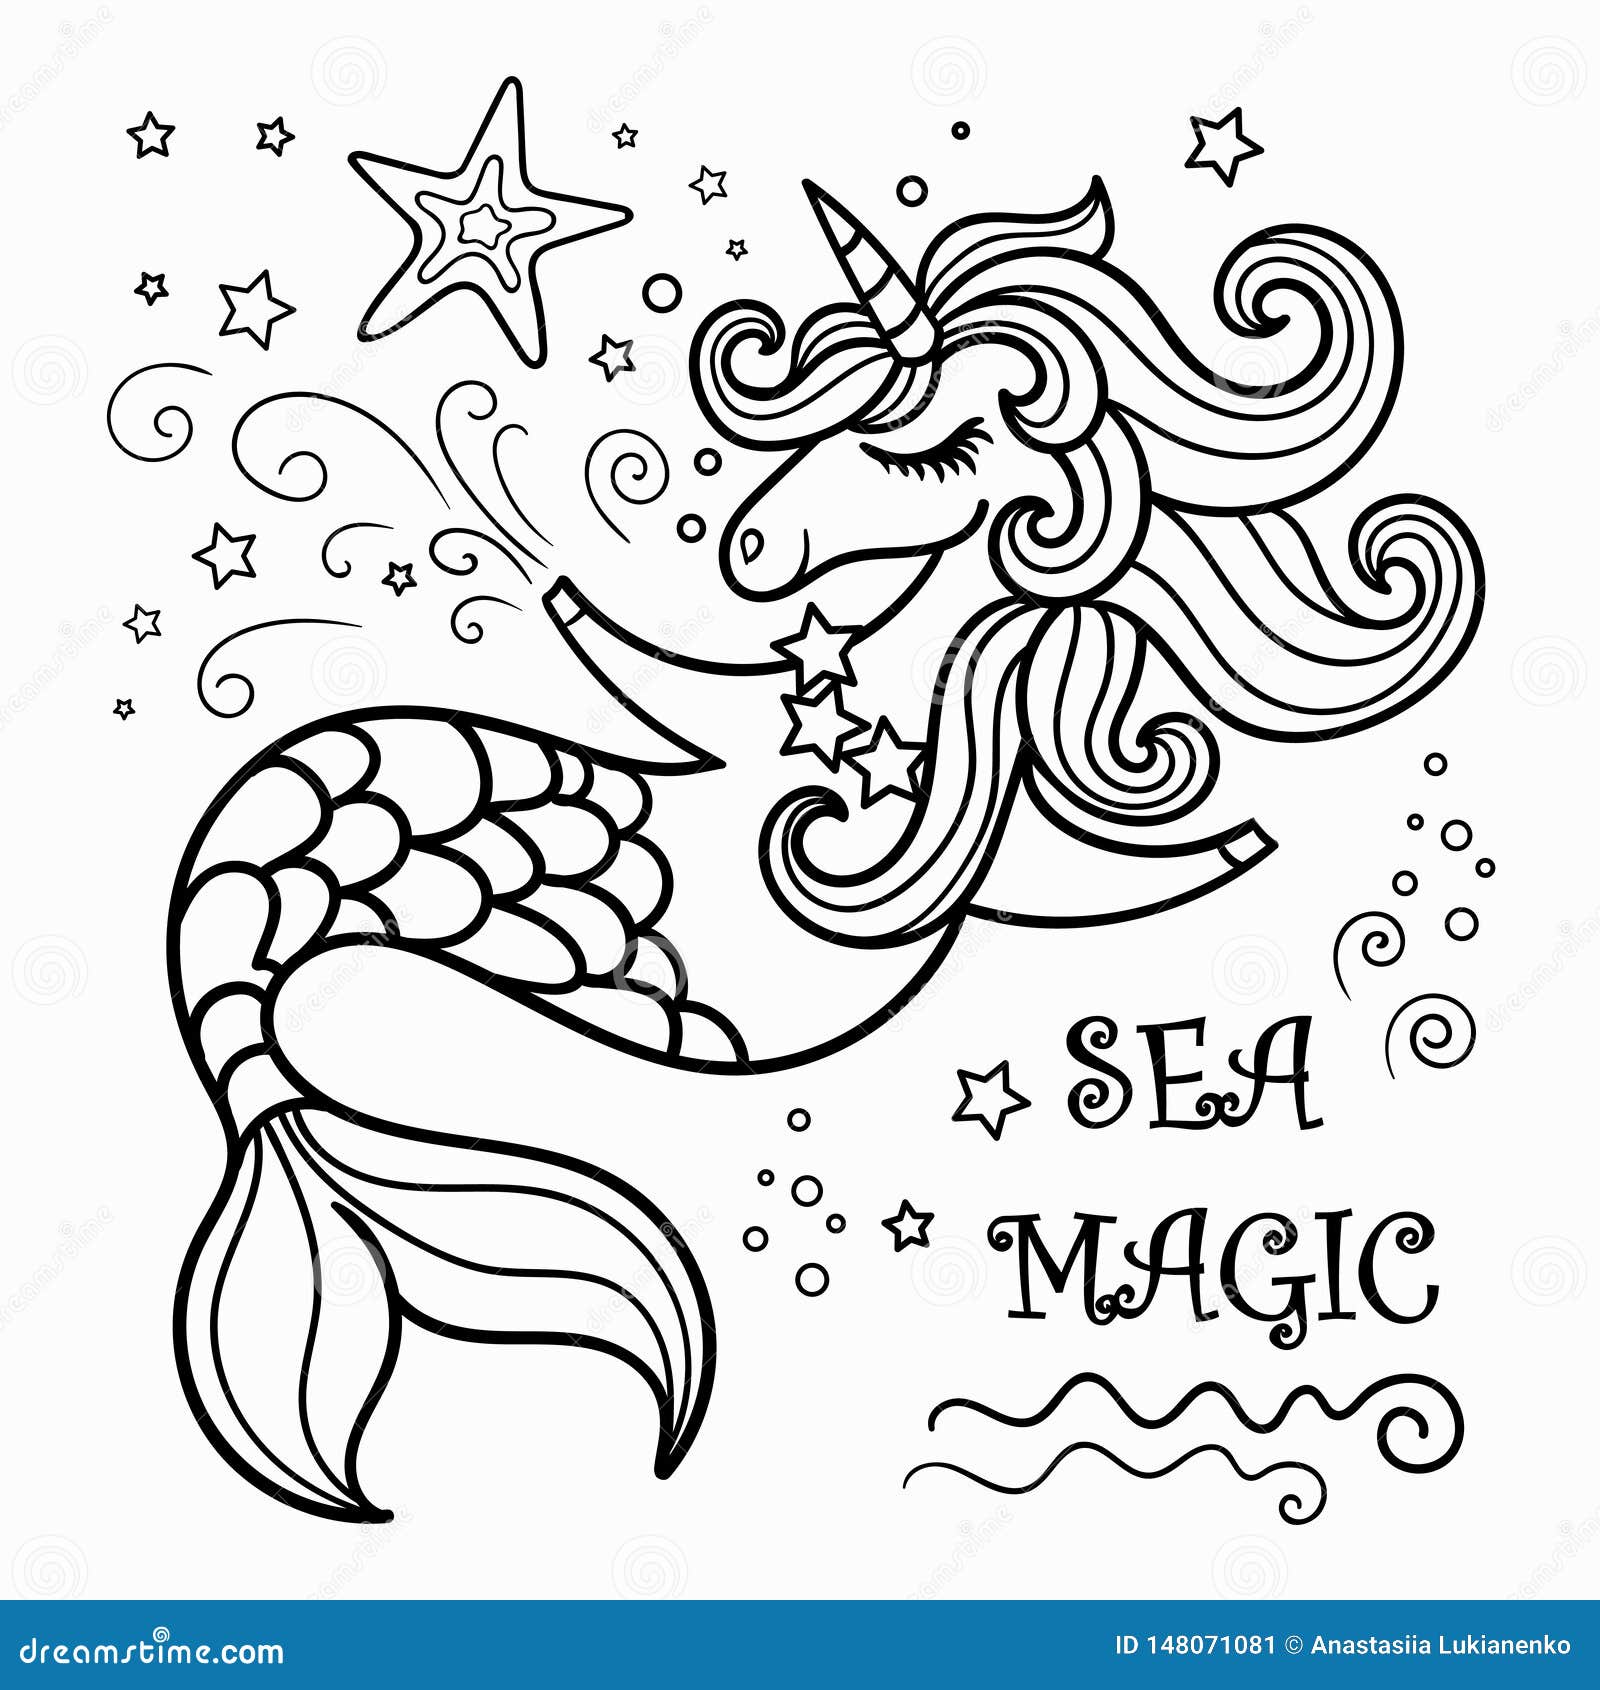 Desenho e Imagem Cabeça de Sereia Real para Colorir e Imprimir Grátis para  Adultos e Crianças 